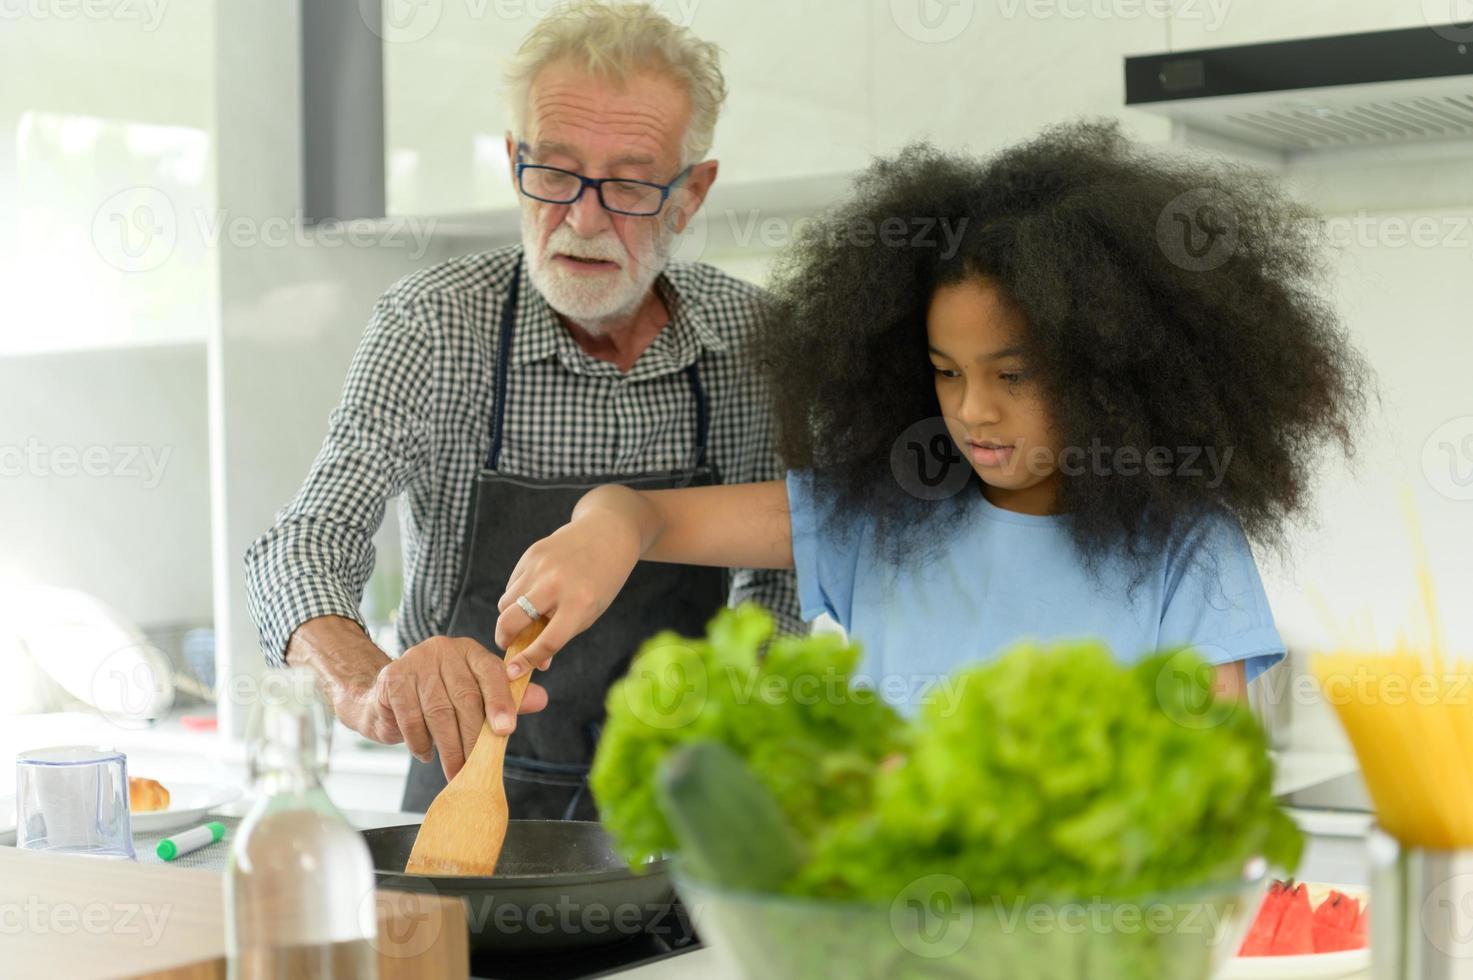 familjesemesteraktiviteter med farfar och barnbarn. lagar middag tillsammans för familjen farfar lär ut matlagning till sitt halvasiatiska barnbarn afroamerikaner foto